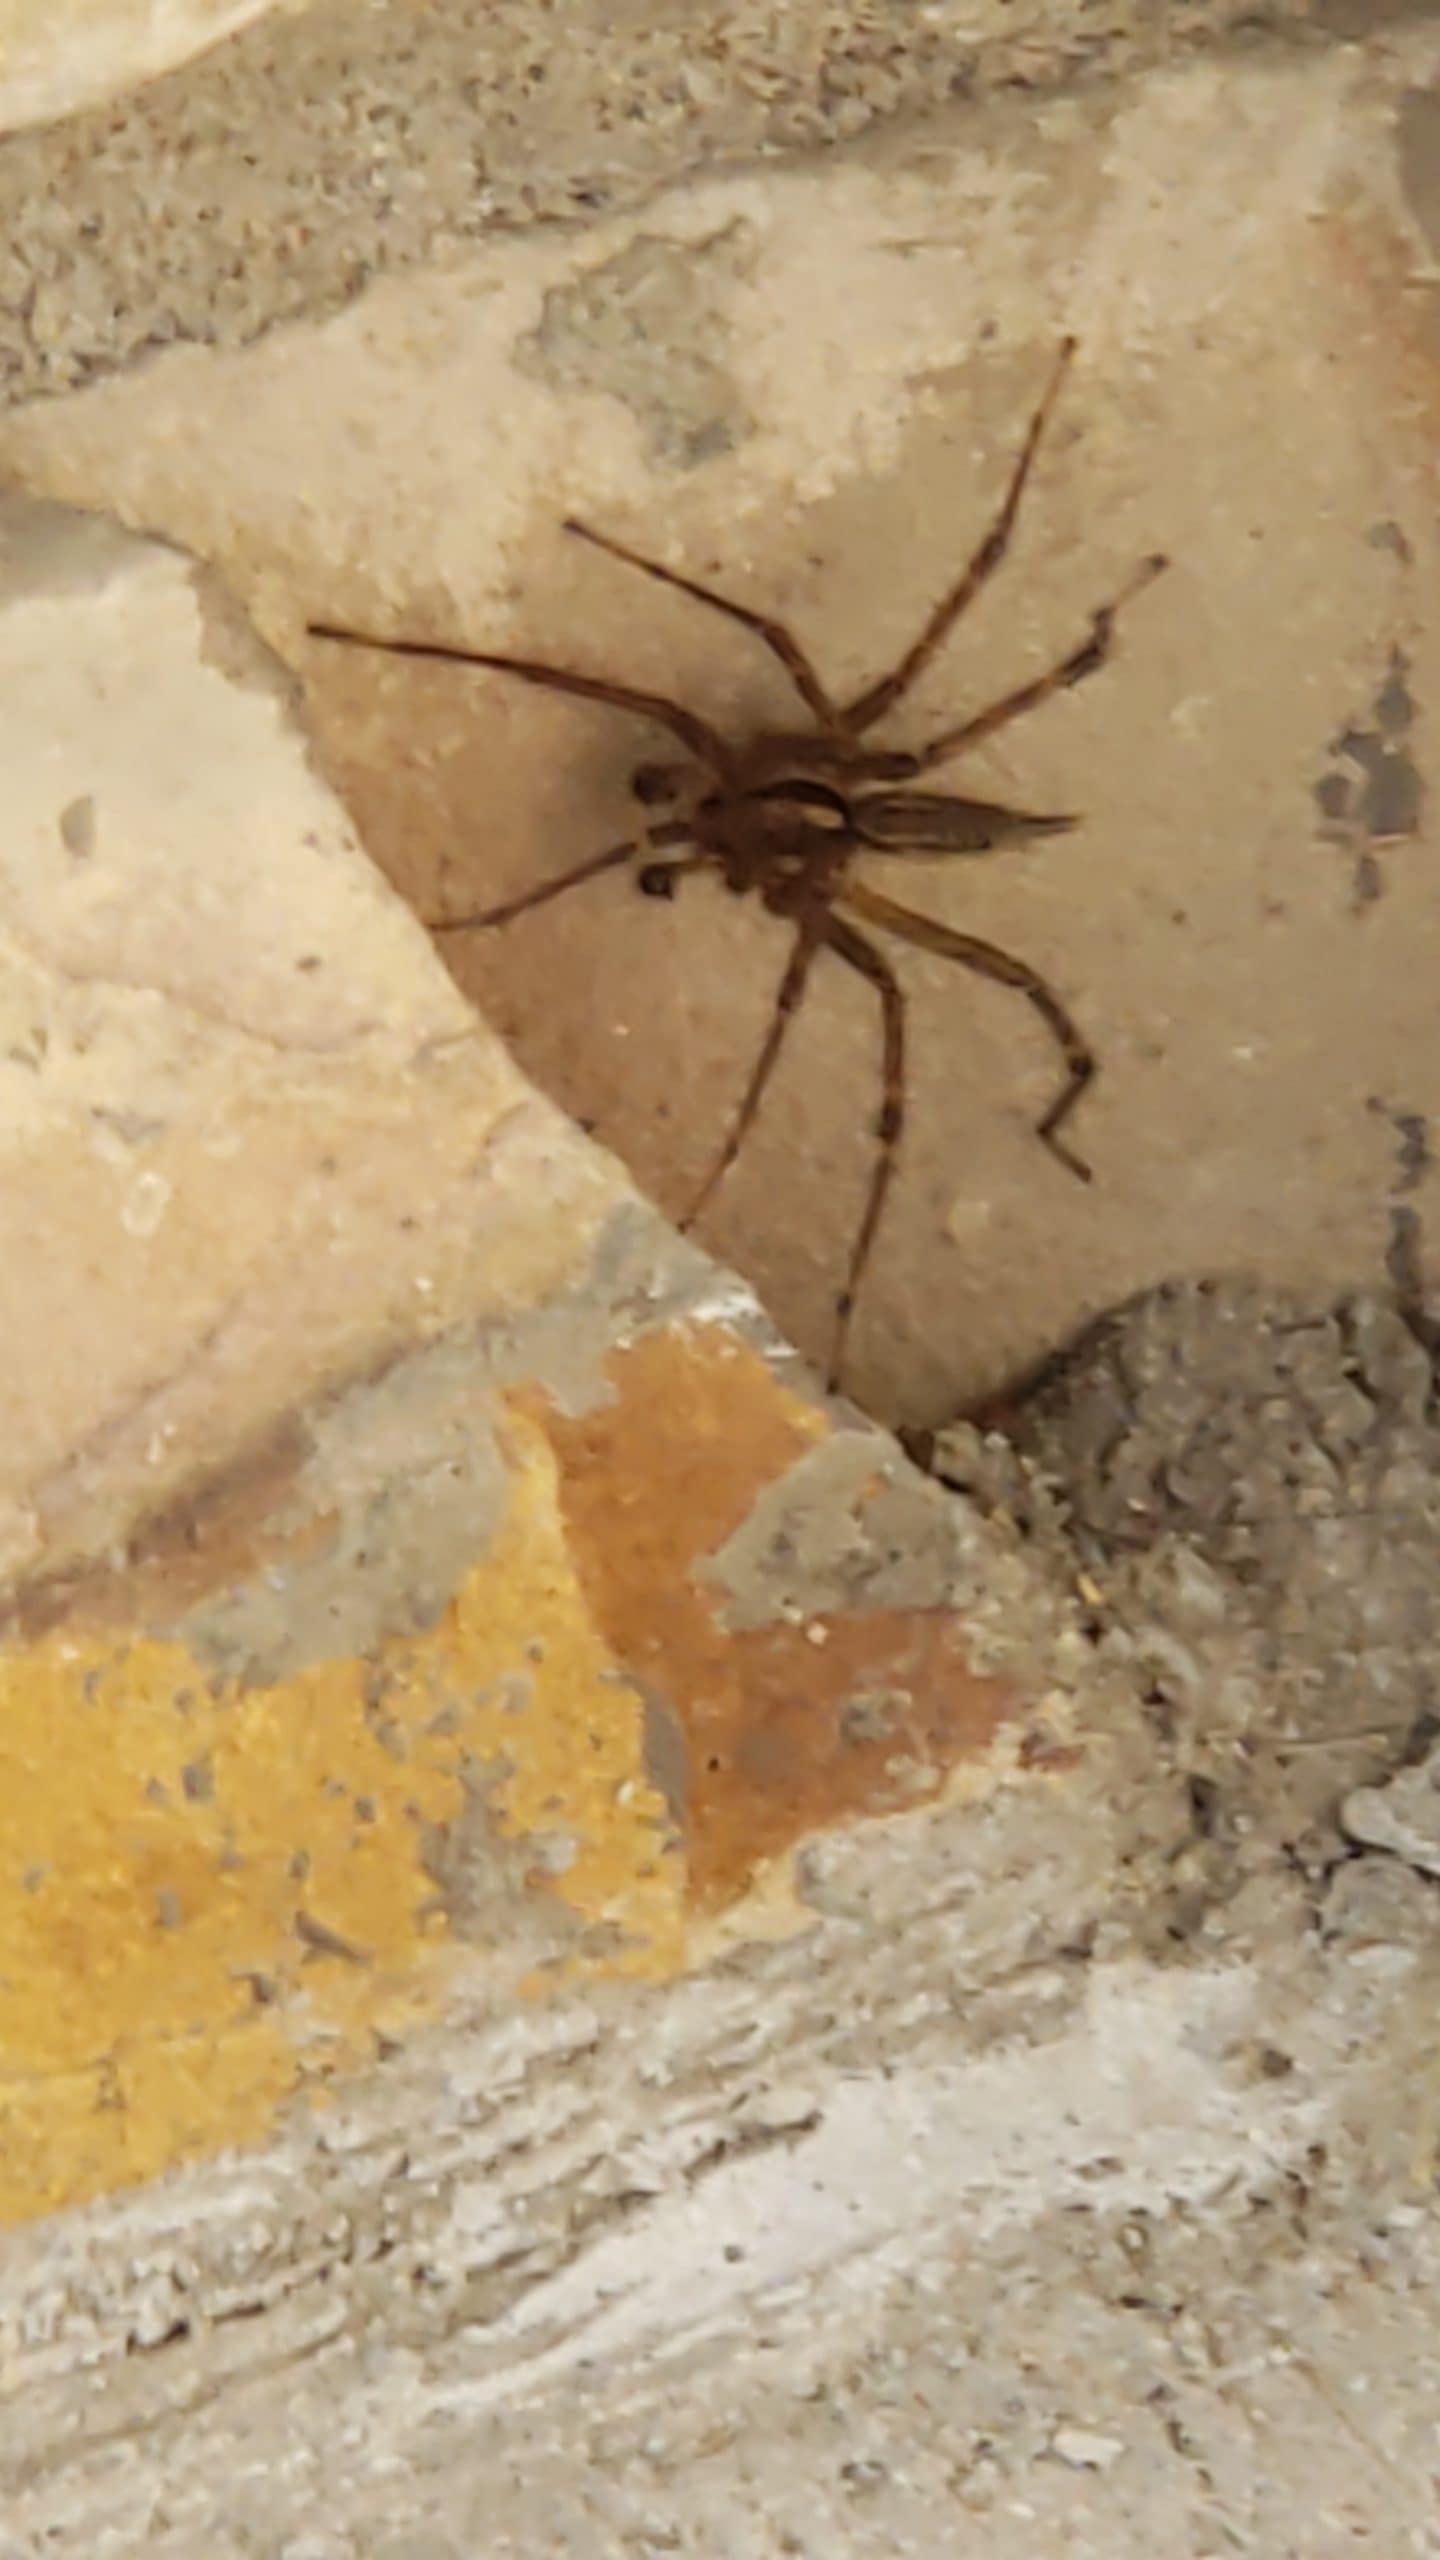 Unidentified spider in Allamuchy, New Jersey United States